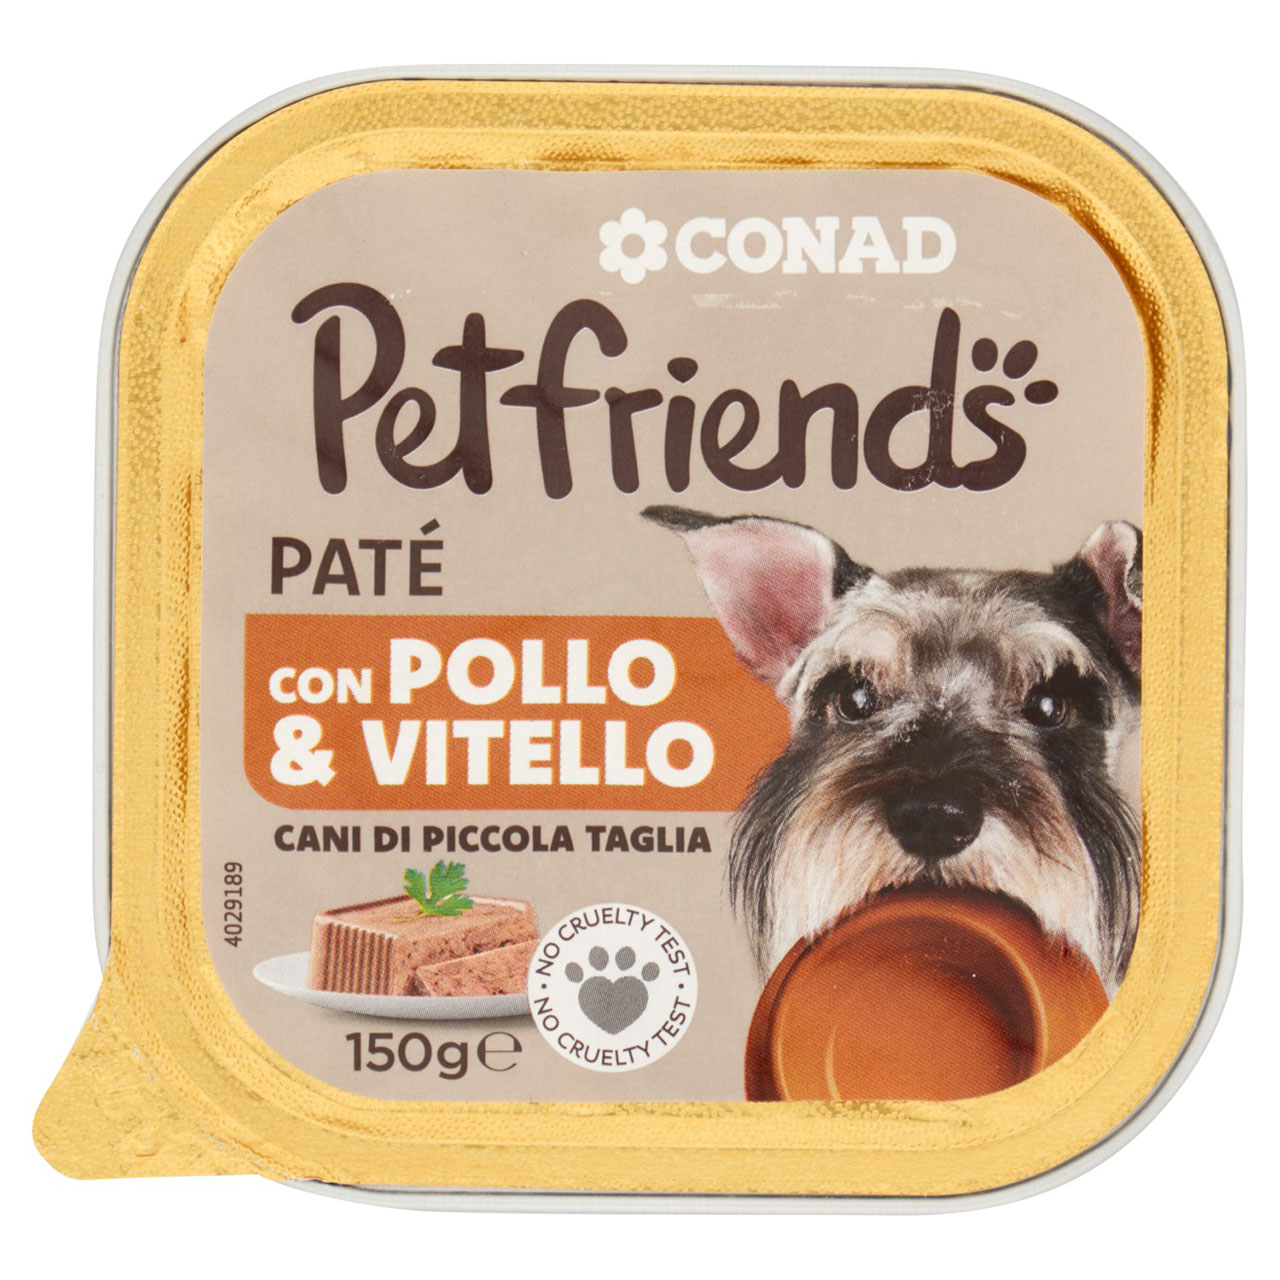 Petfriends Patè Pollo & Vitello 150g Conad online